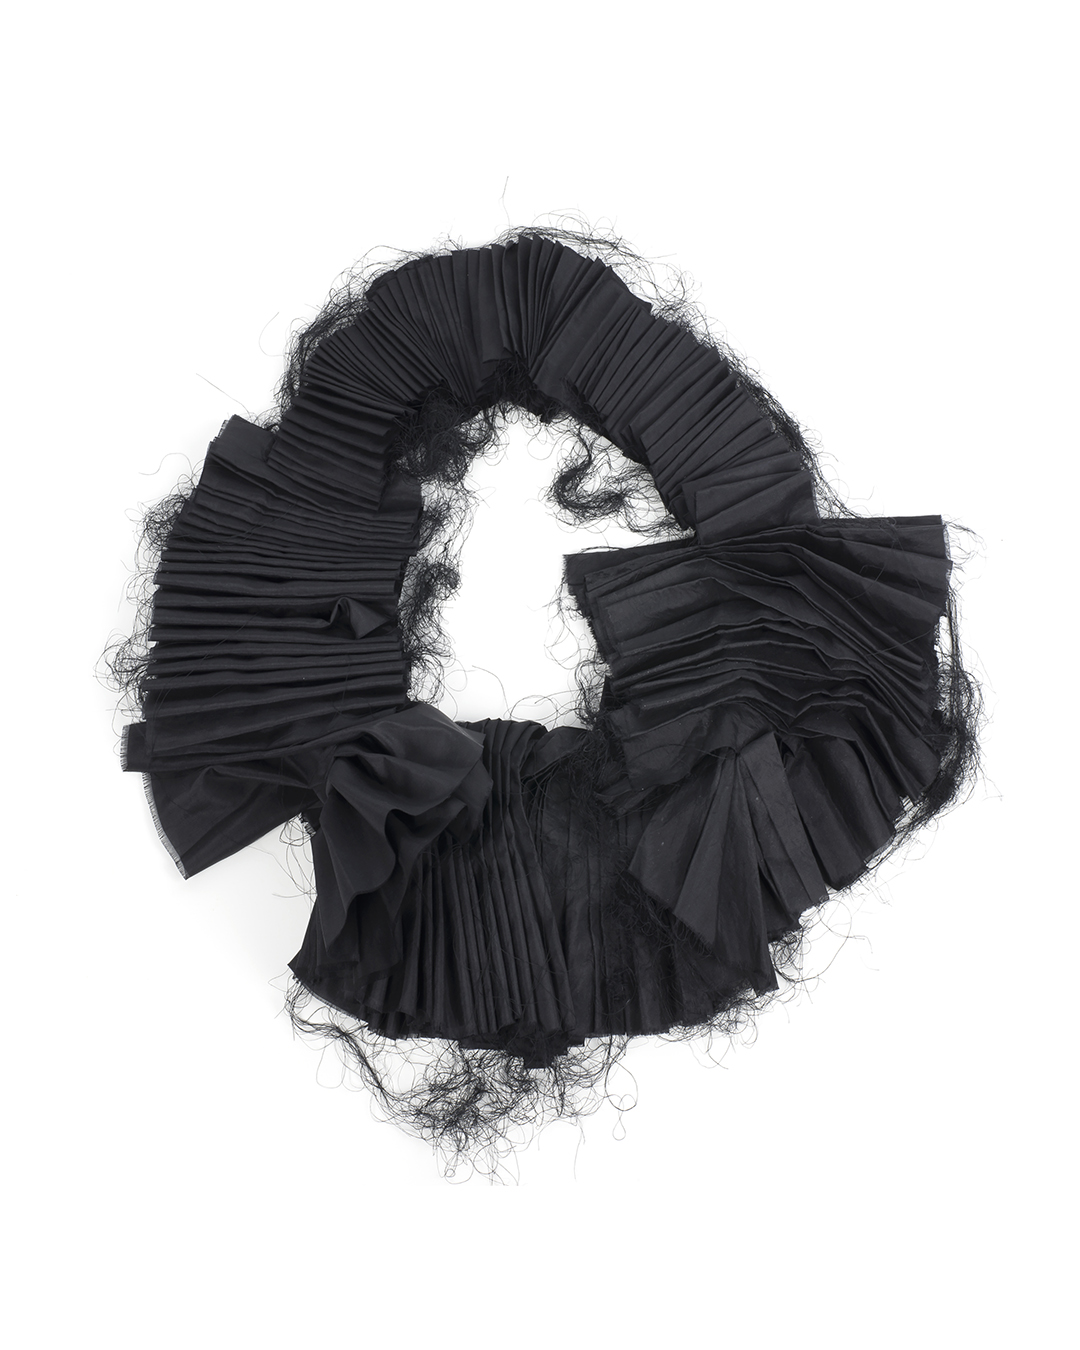 Anna Rusínová, Borrowed Feathers, 2019, necklace; natural silk, thread, 400 x 300 x 130 mm